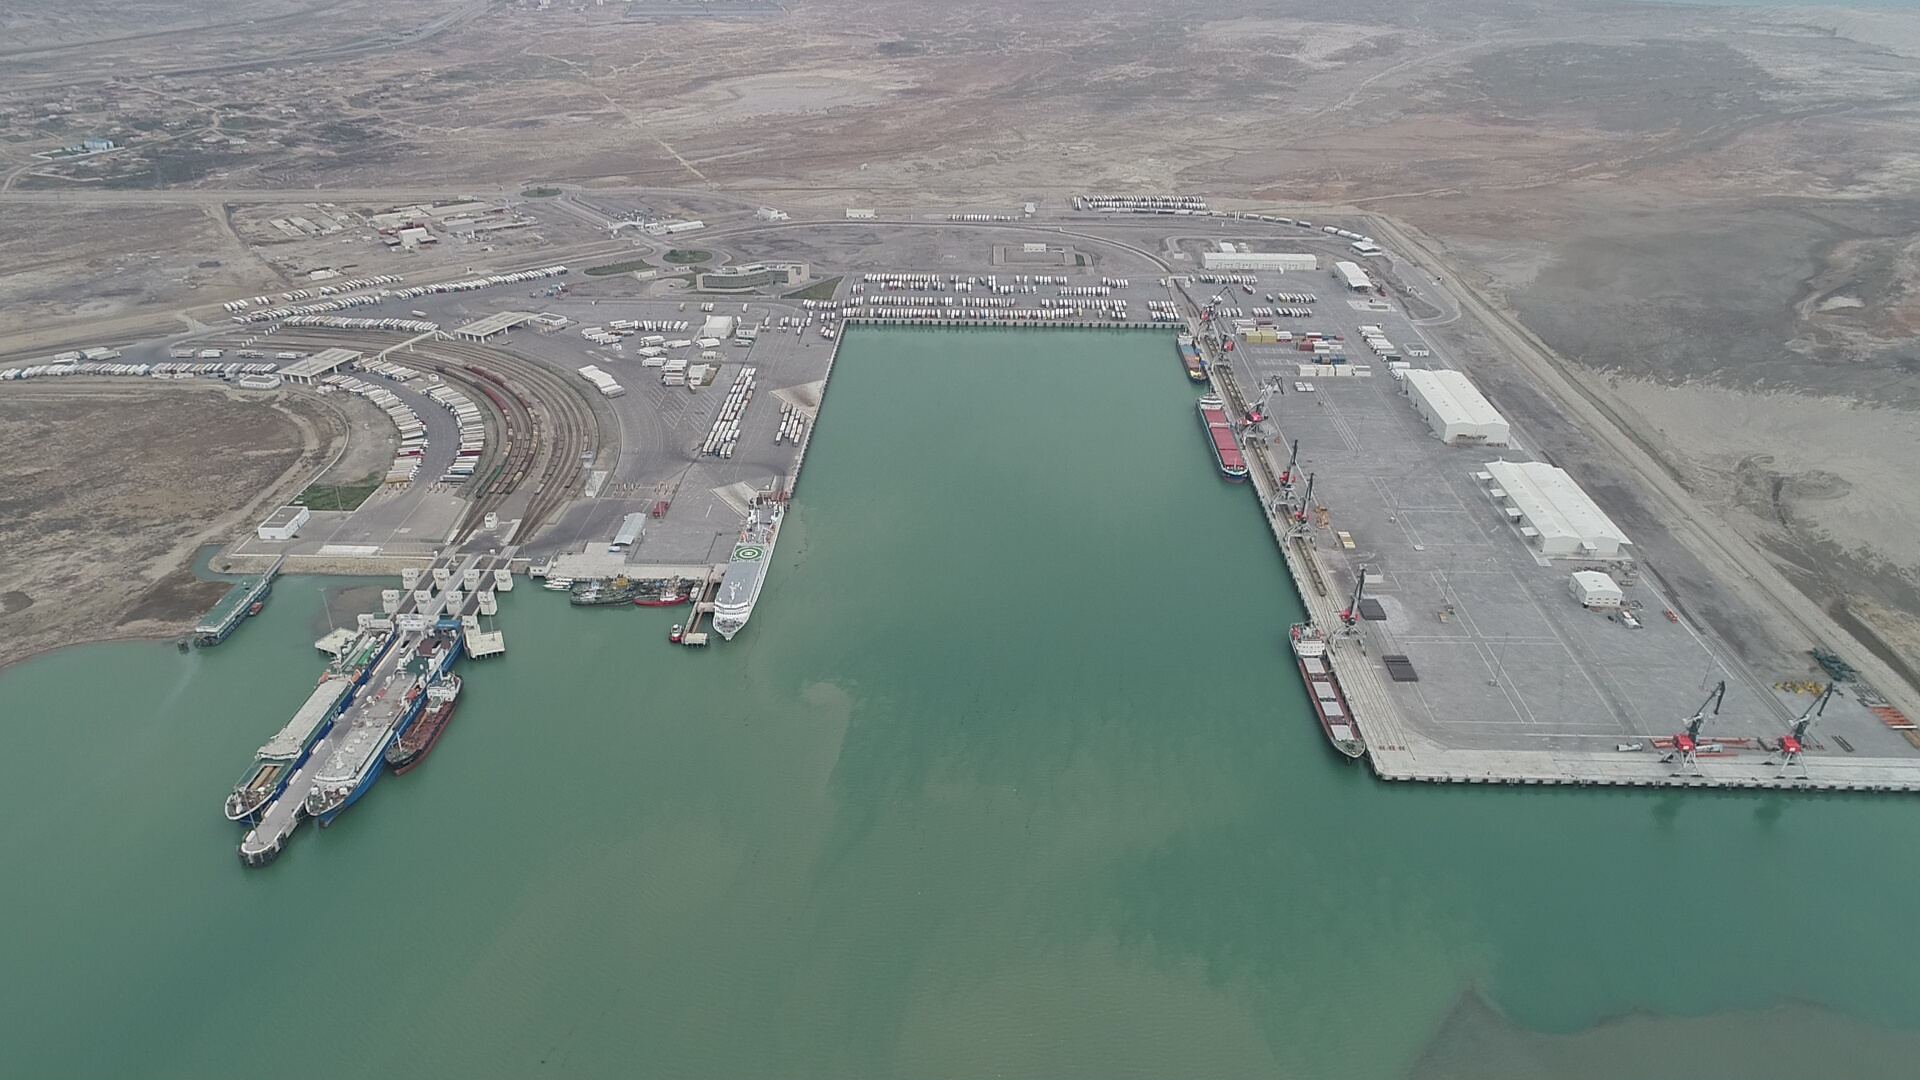 Значительно вырос спрос на грузоперевозки через территорию Азербайджана по ТМТМ - глава департамента Бакинского порта